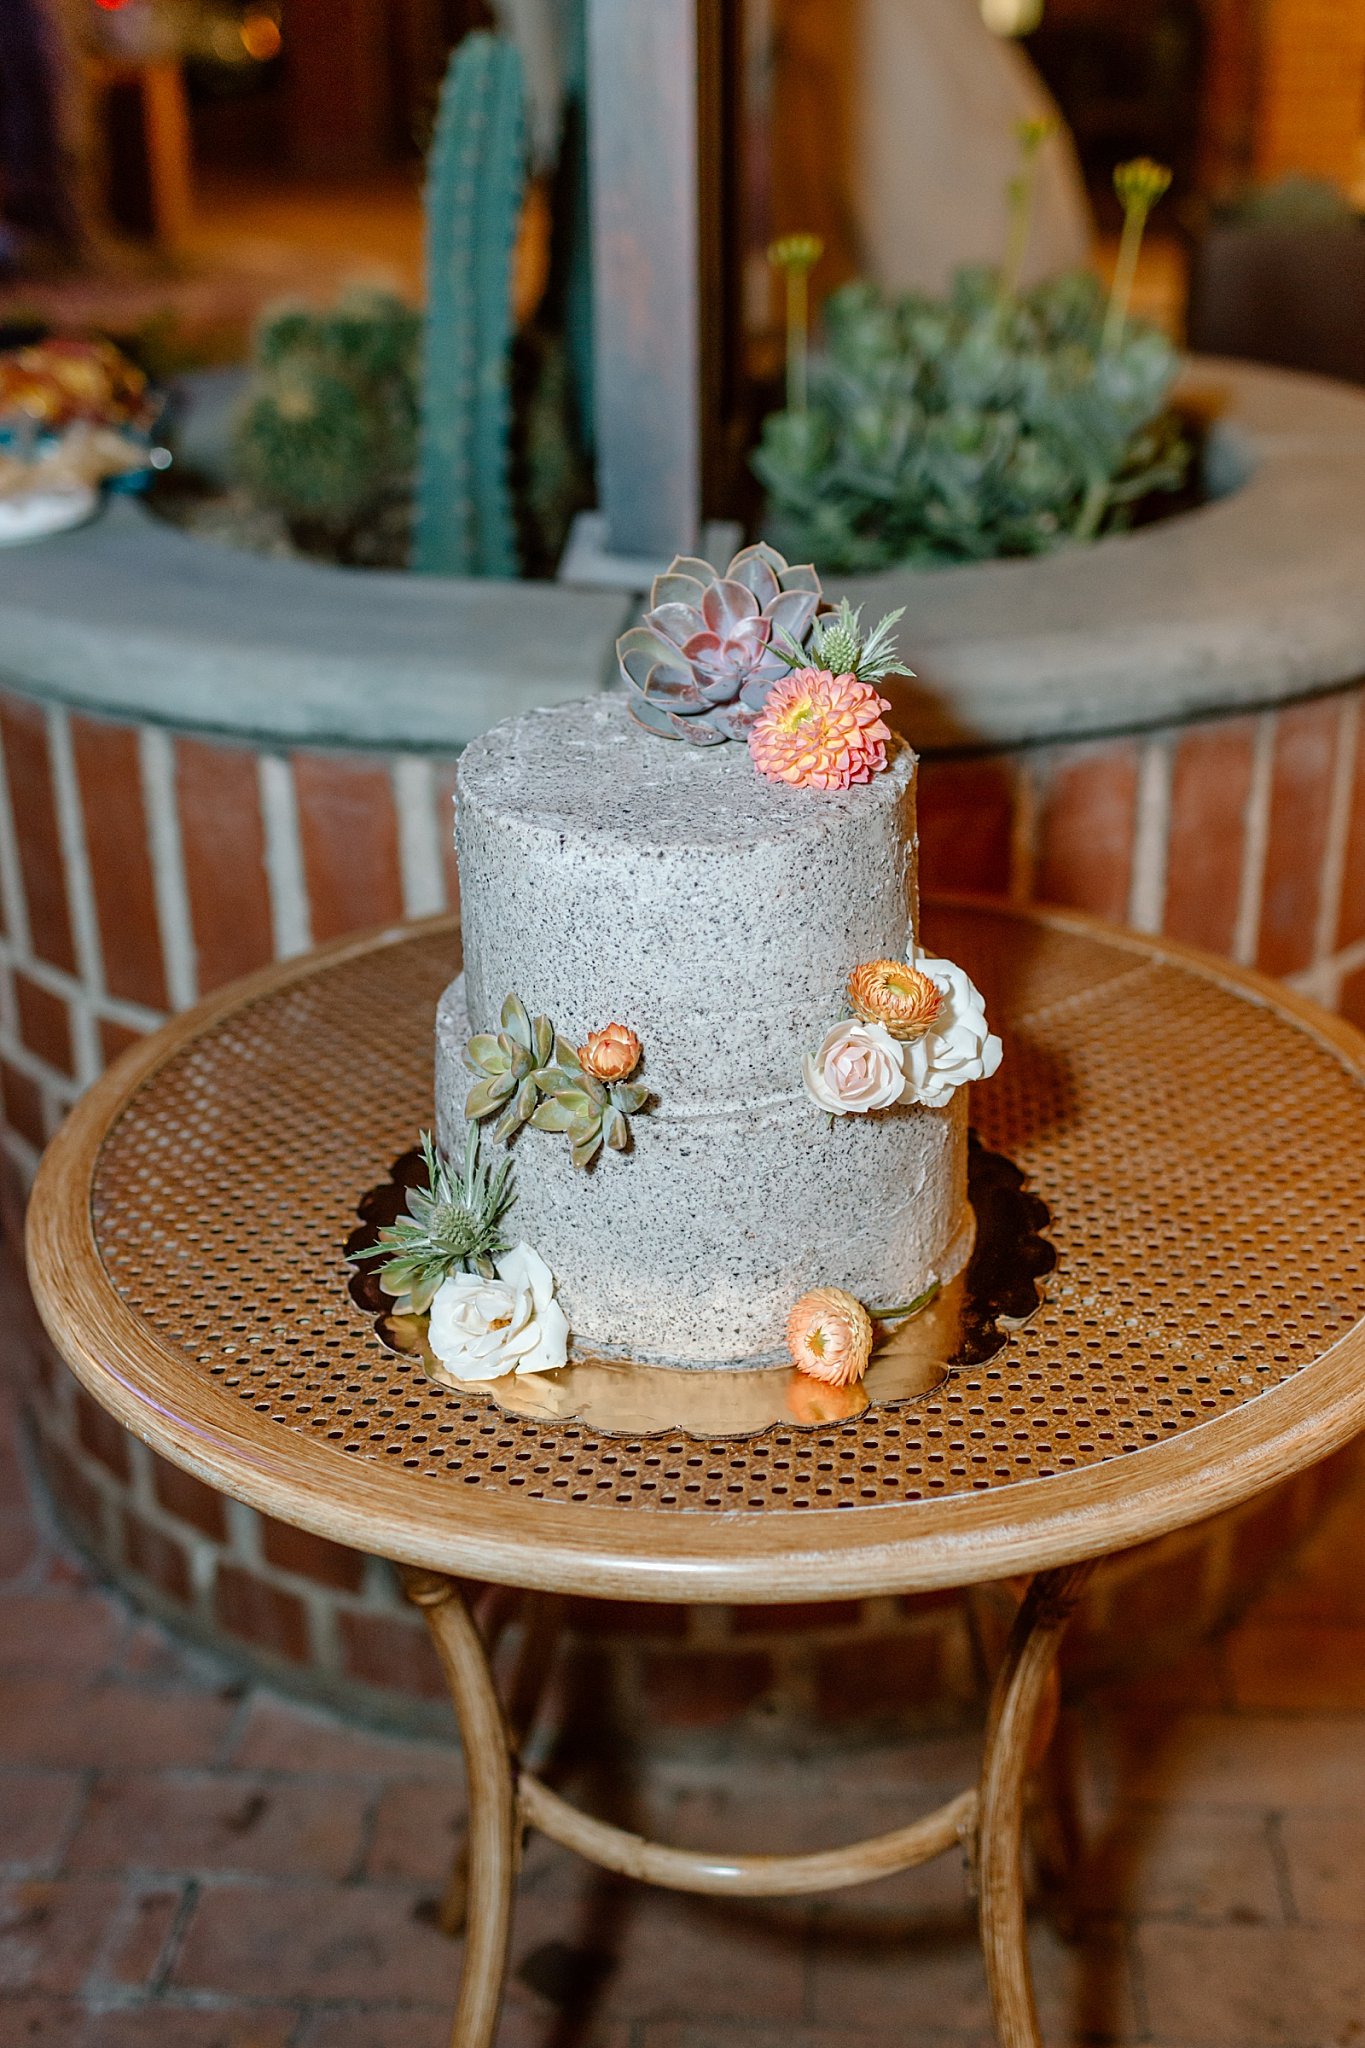  wedding cake at Tucson botanical gardens ceremony 